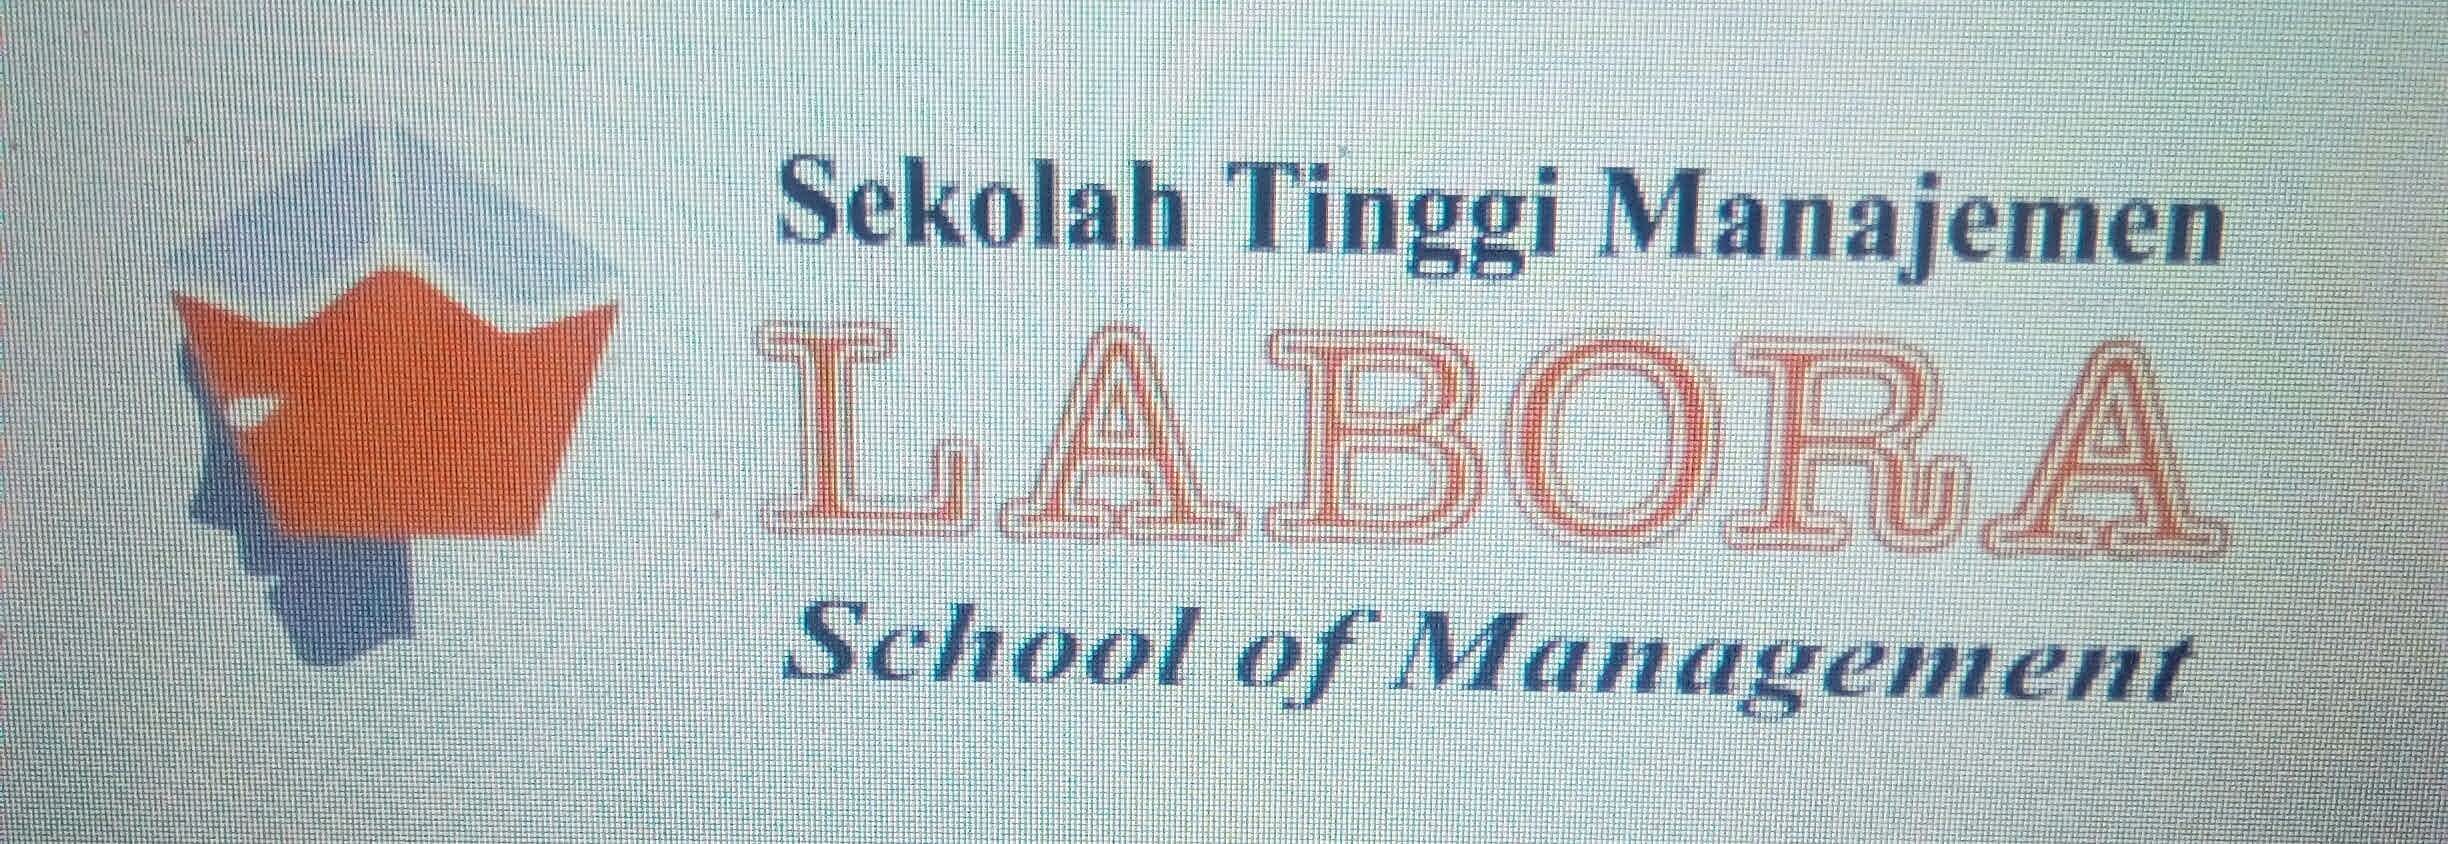 logo Sekolah Tinggi Manajemen Labora